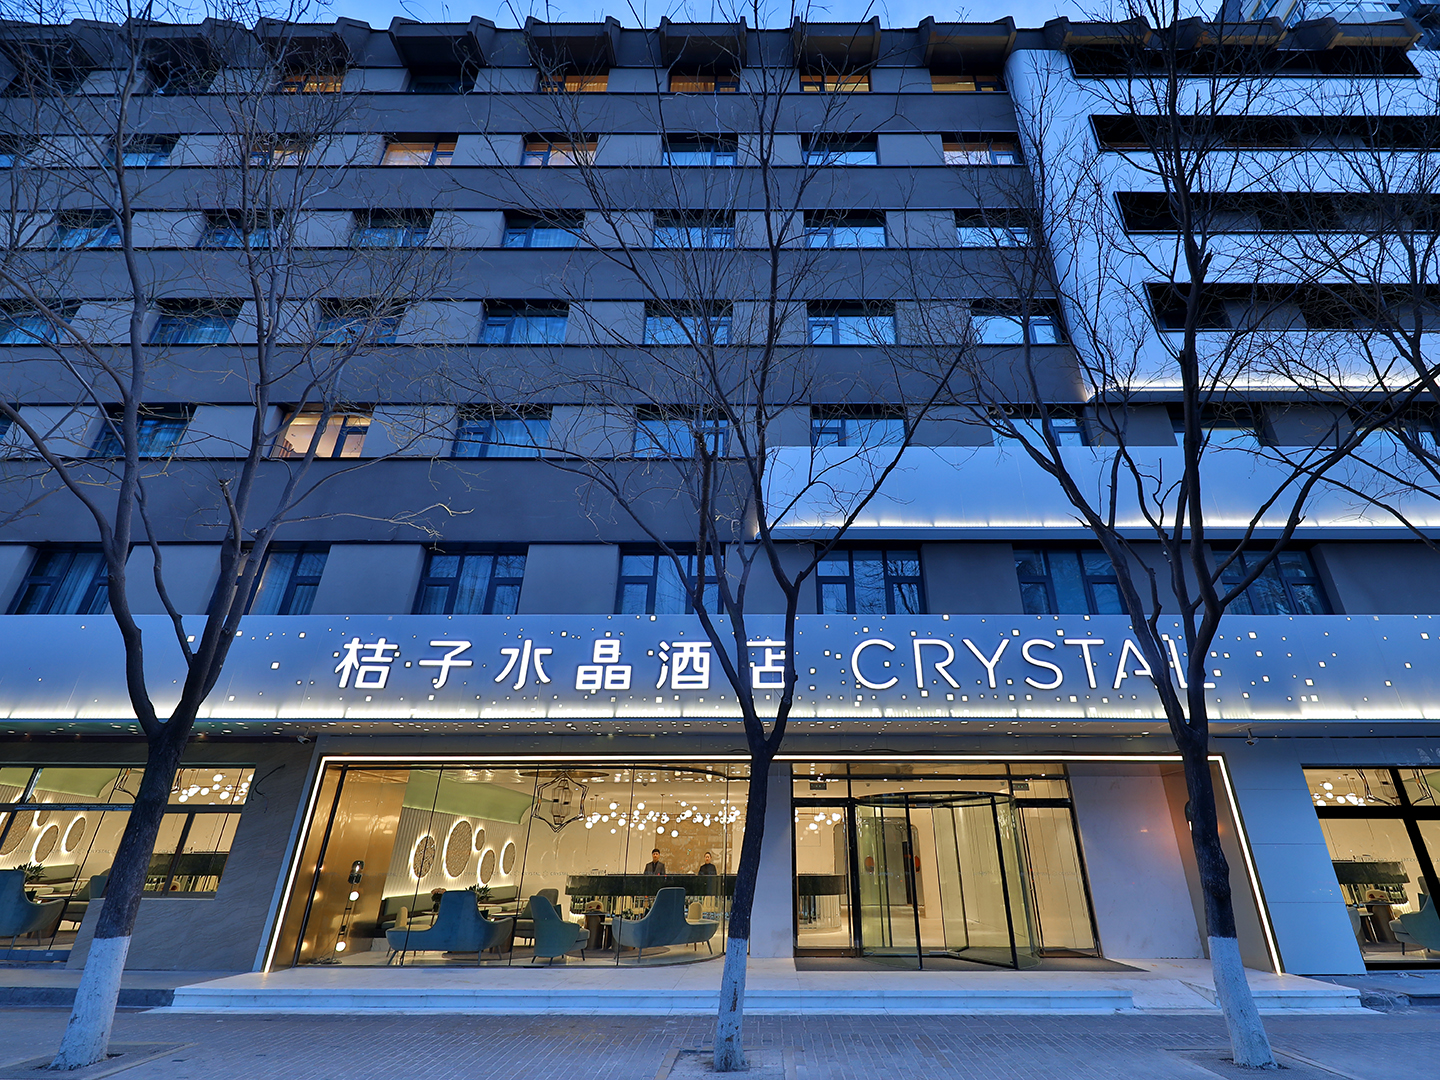 桔子水晶北京南站酒店